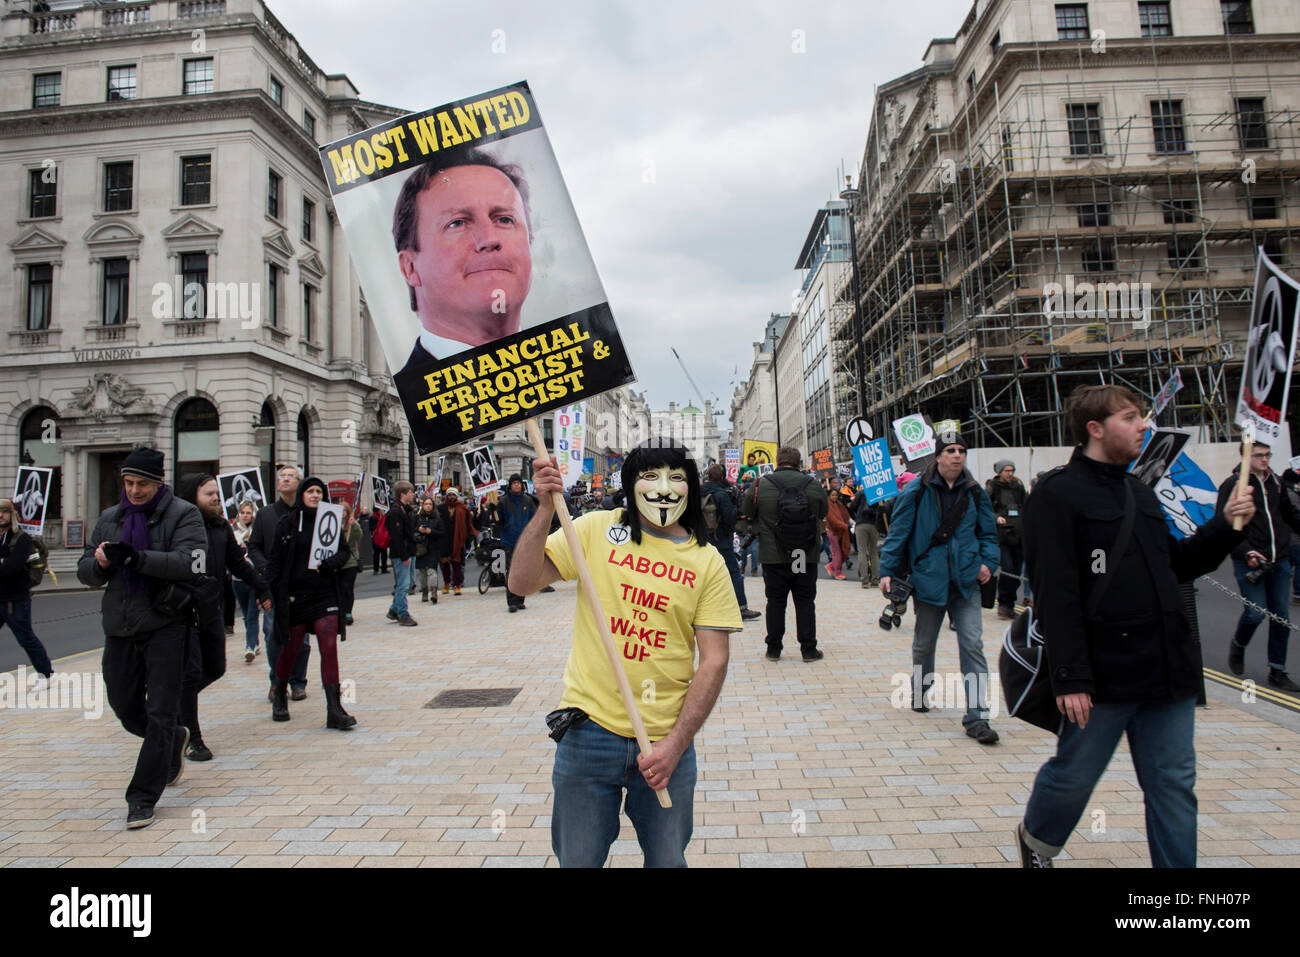 Manifestant portant masque anonyme est holding a placard avec l'image de David Cameron au cours de la protestation Anti-Trident à Londres. Banque D'Images